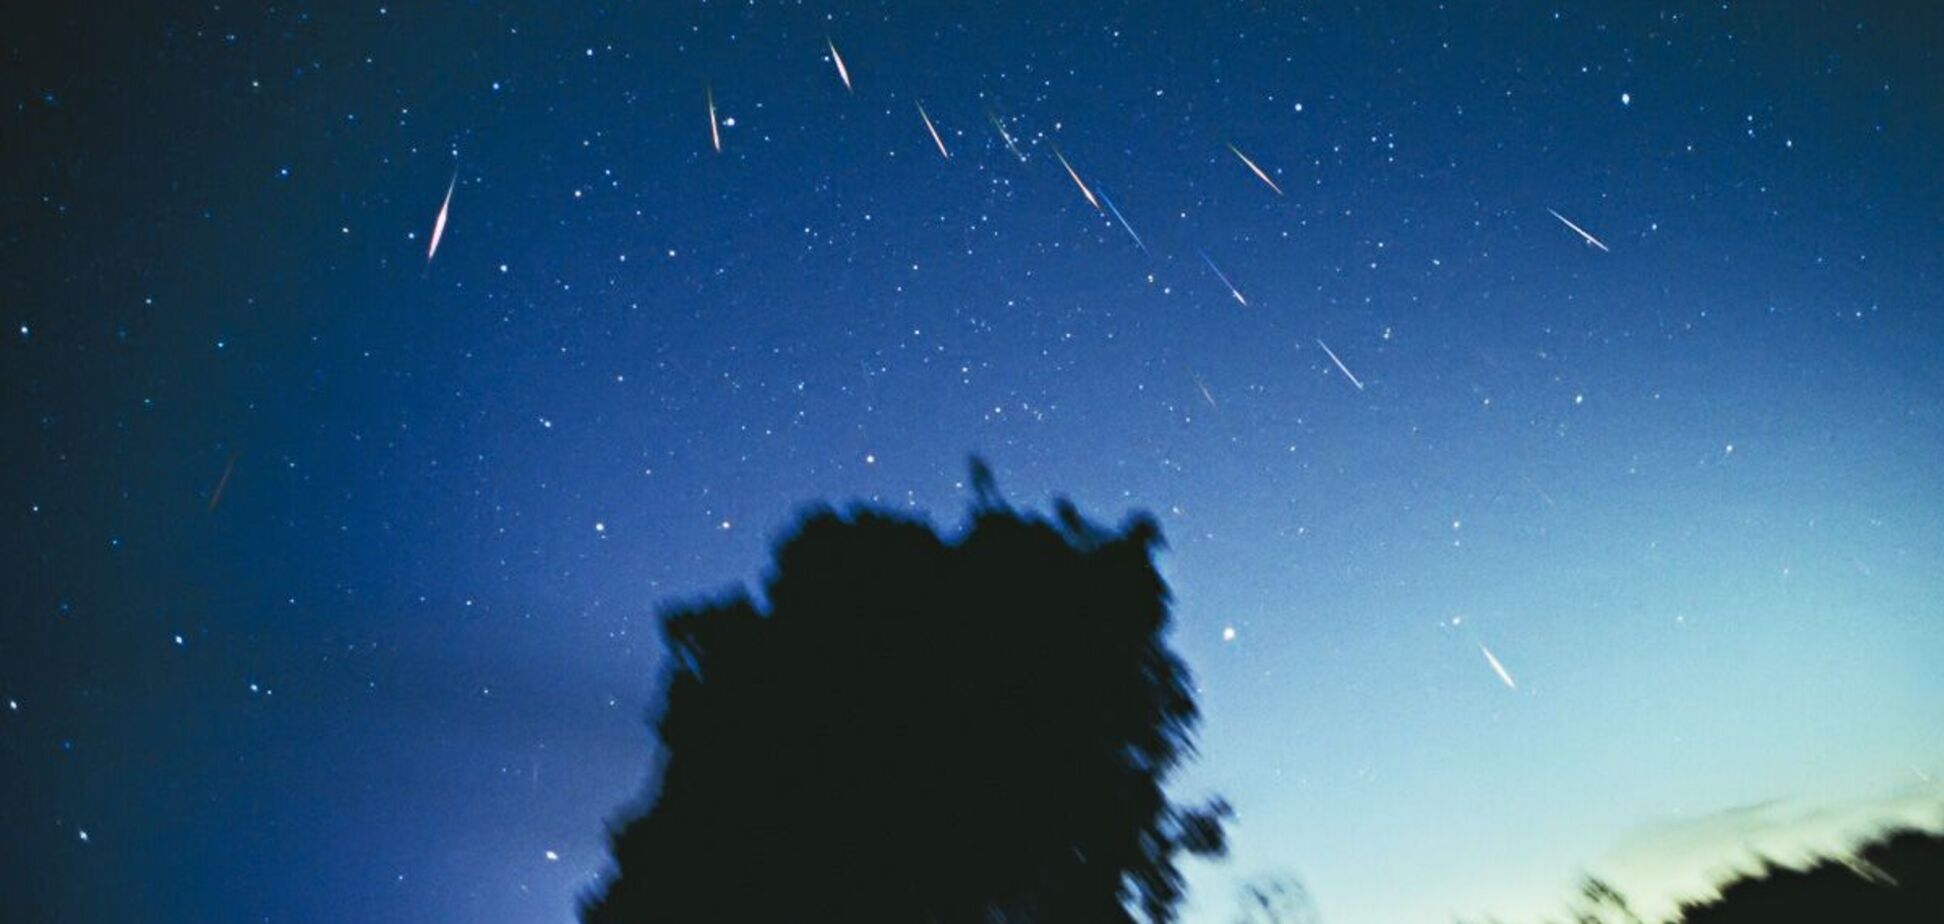 Леониды – самый быстрый из известных метеорных потоков